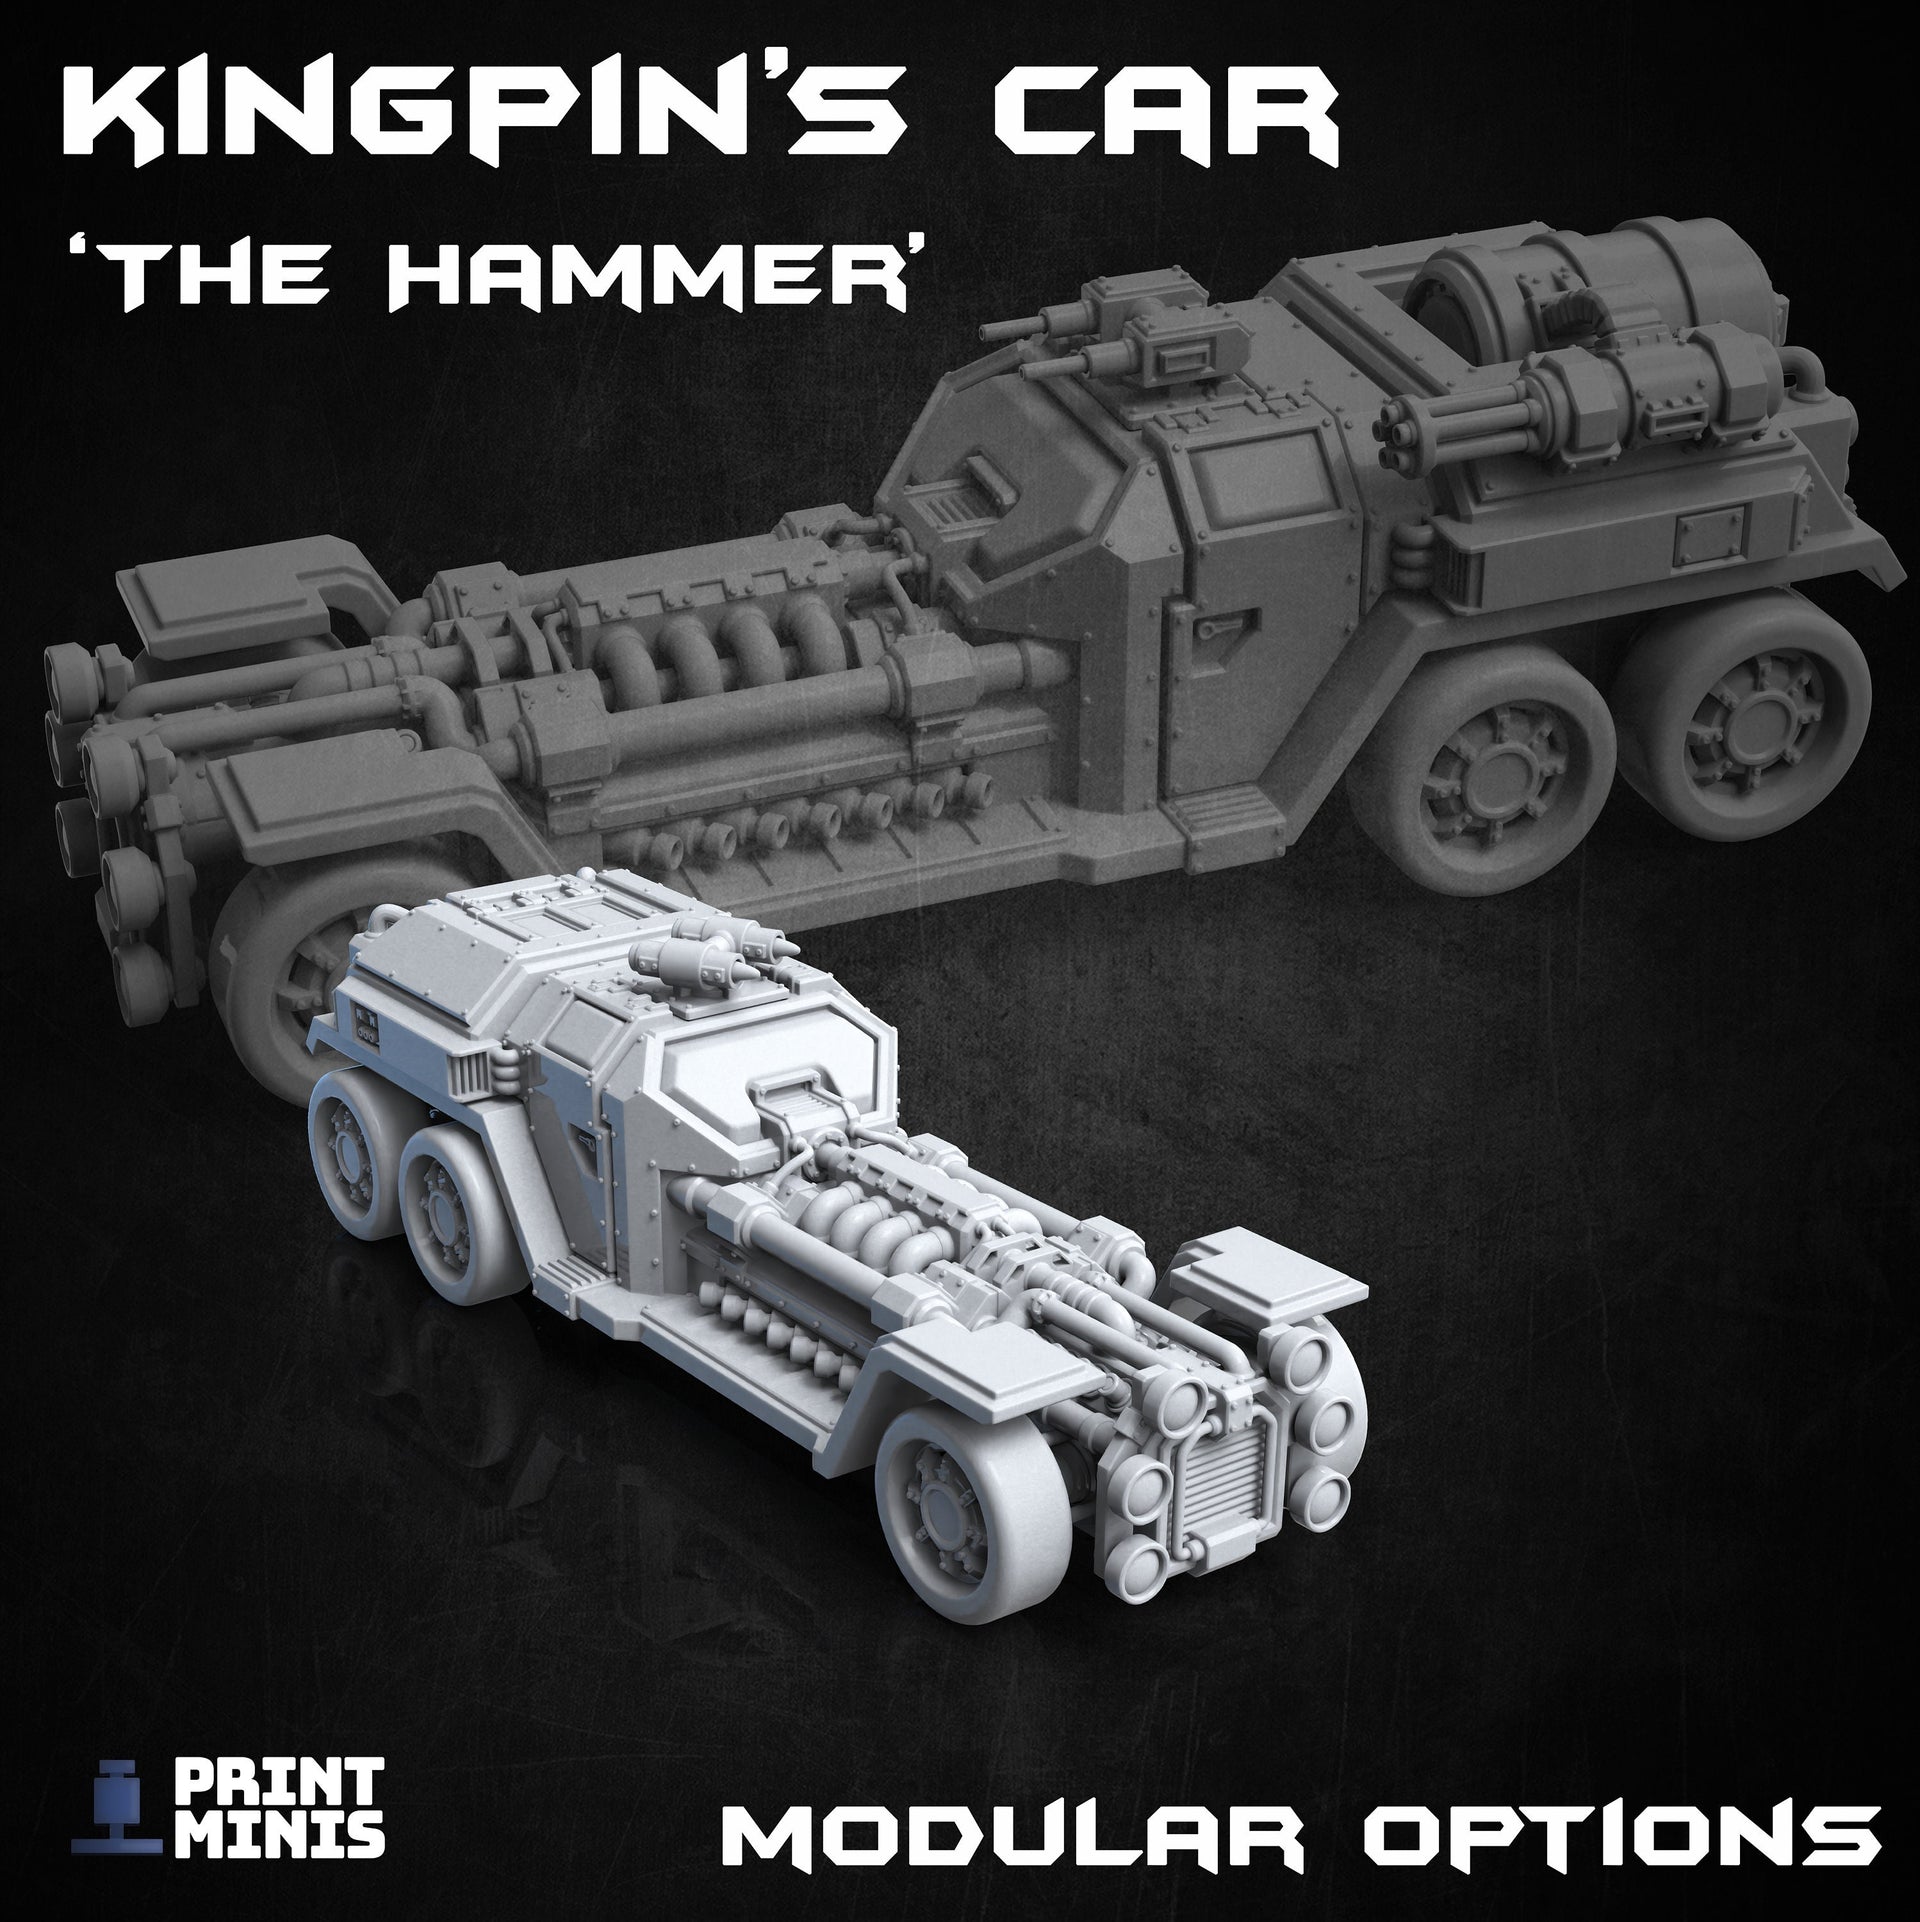 Kingpins Car "The Hammer" - Print Minis 